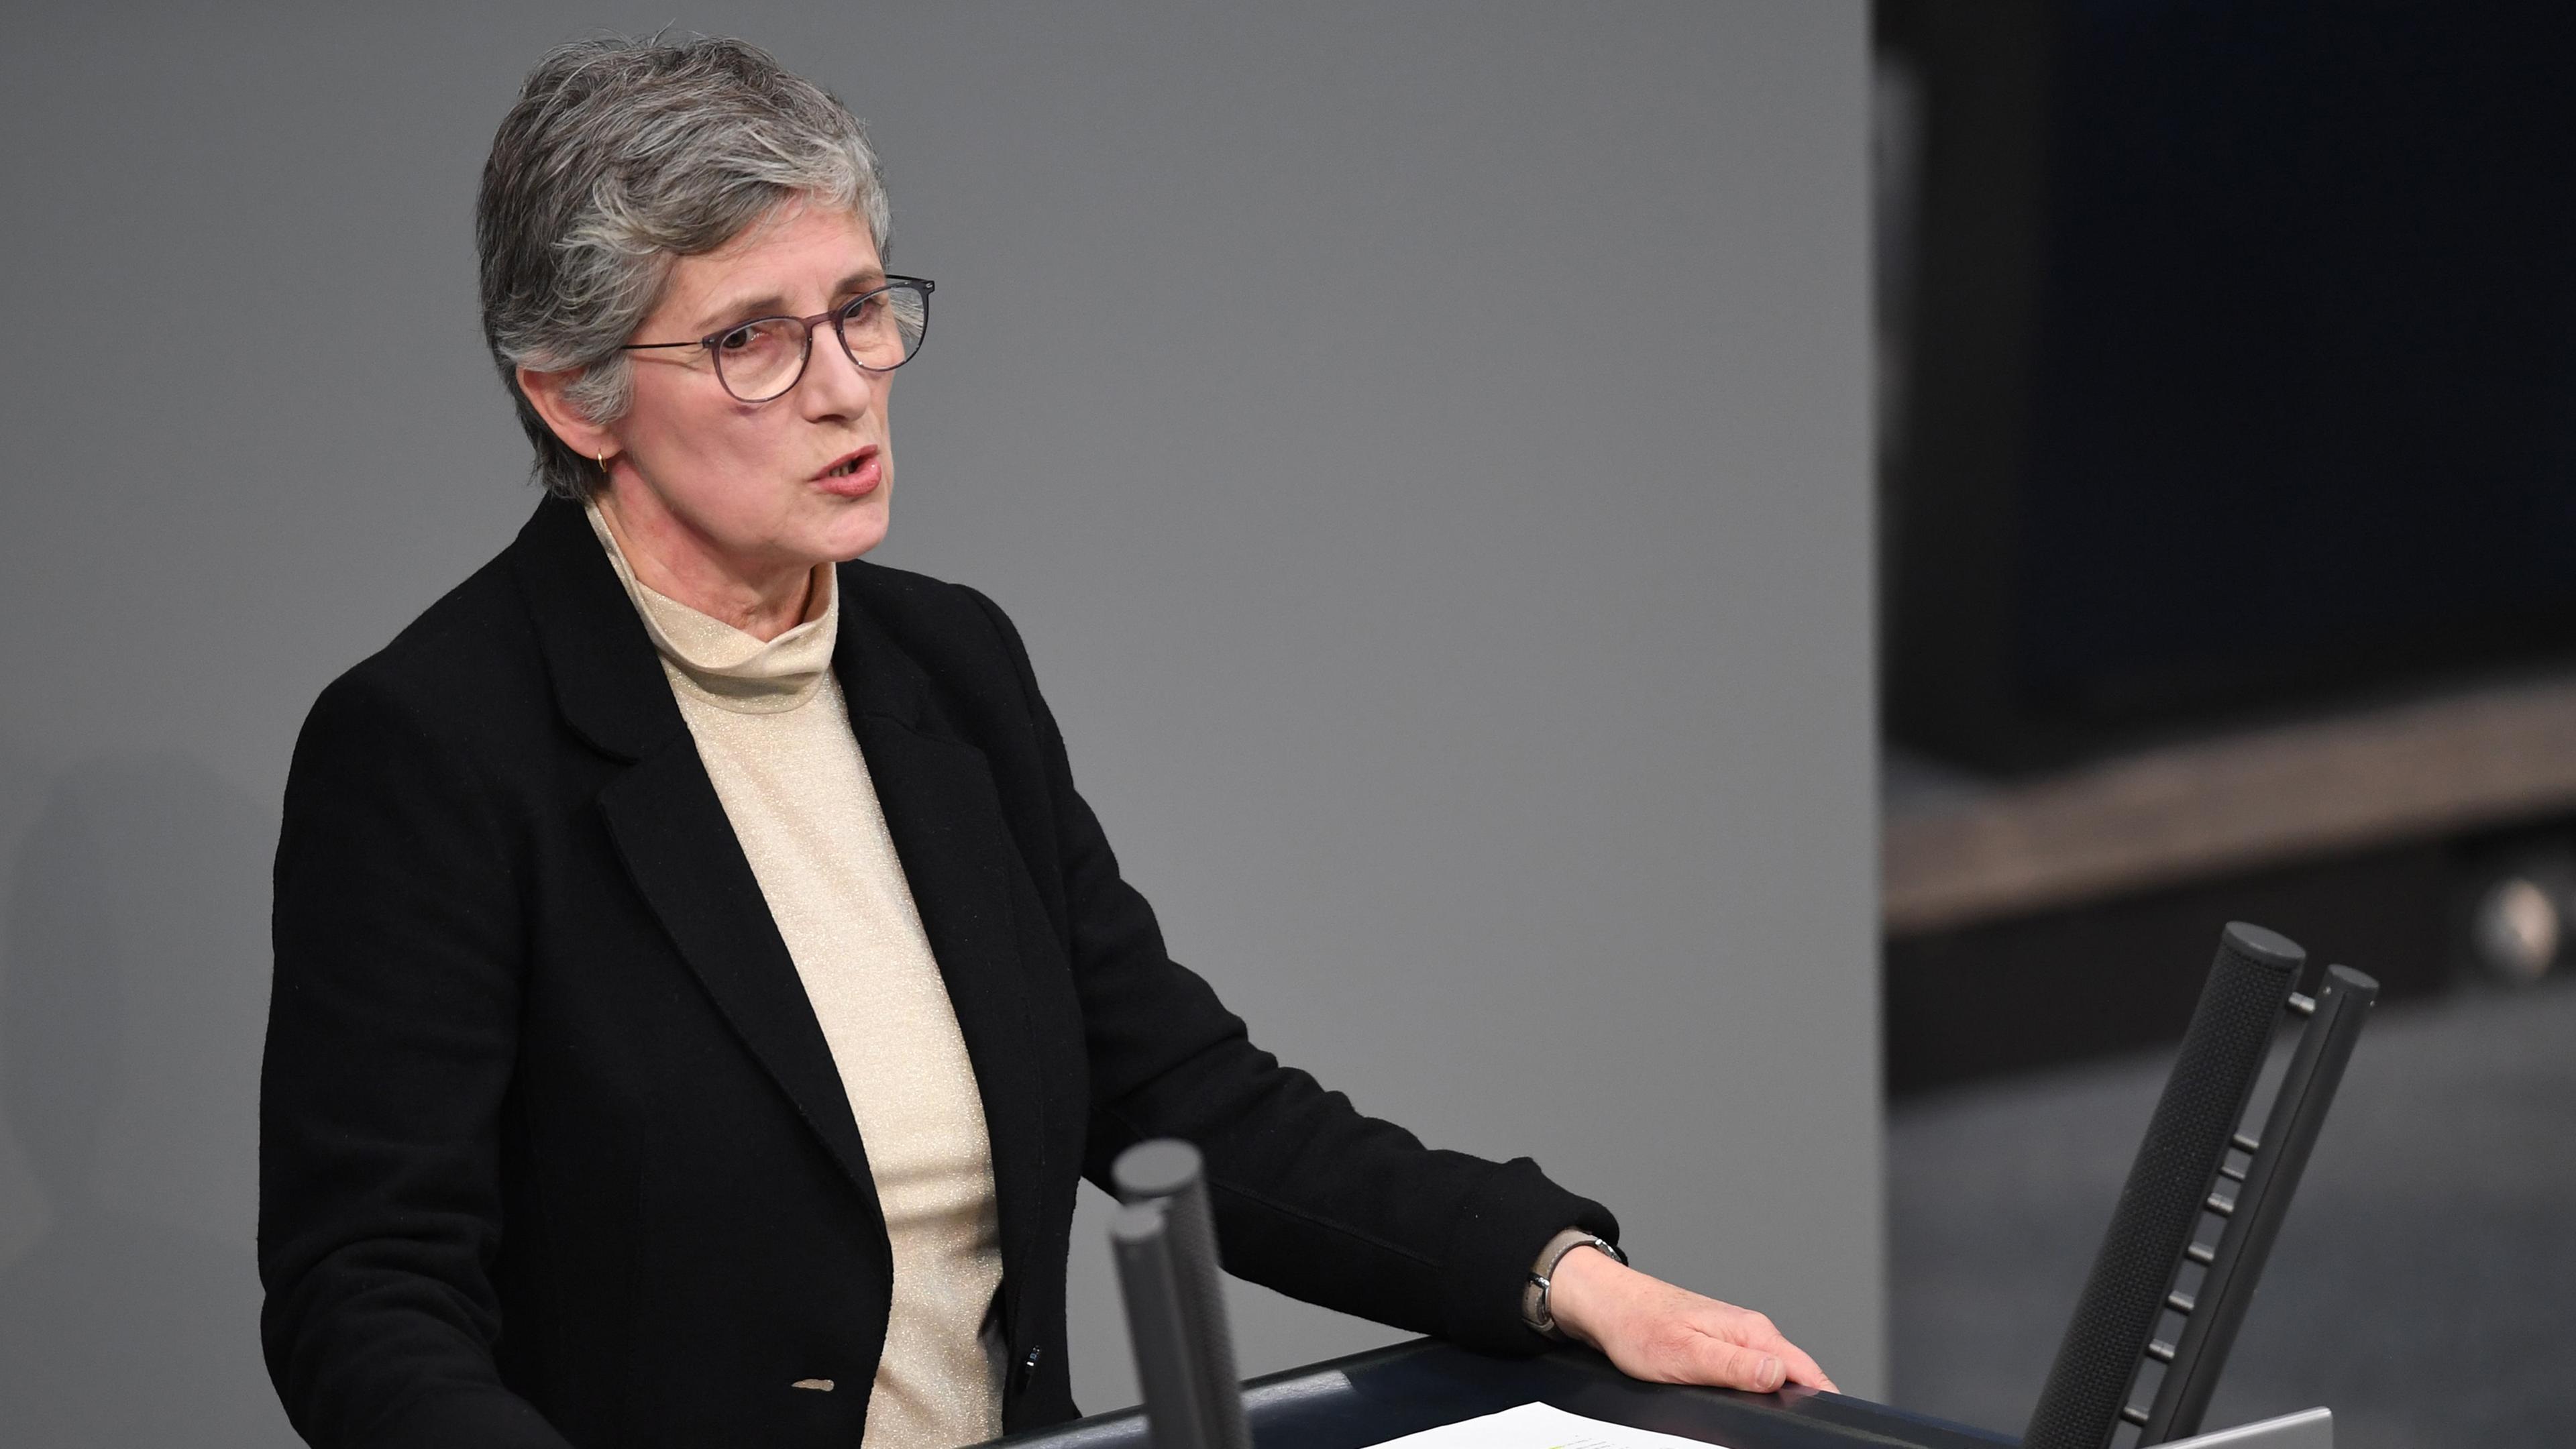 Britta Haßelmann, Bundestags Fraktionsvorsitzende von Bündnis 90/Die Grünen, spricht im Plenum des Deutschen Bundestages.